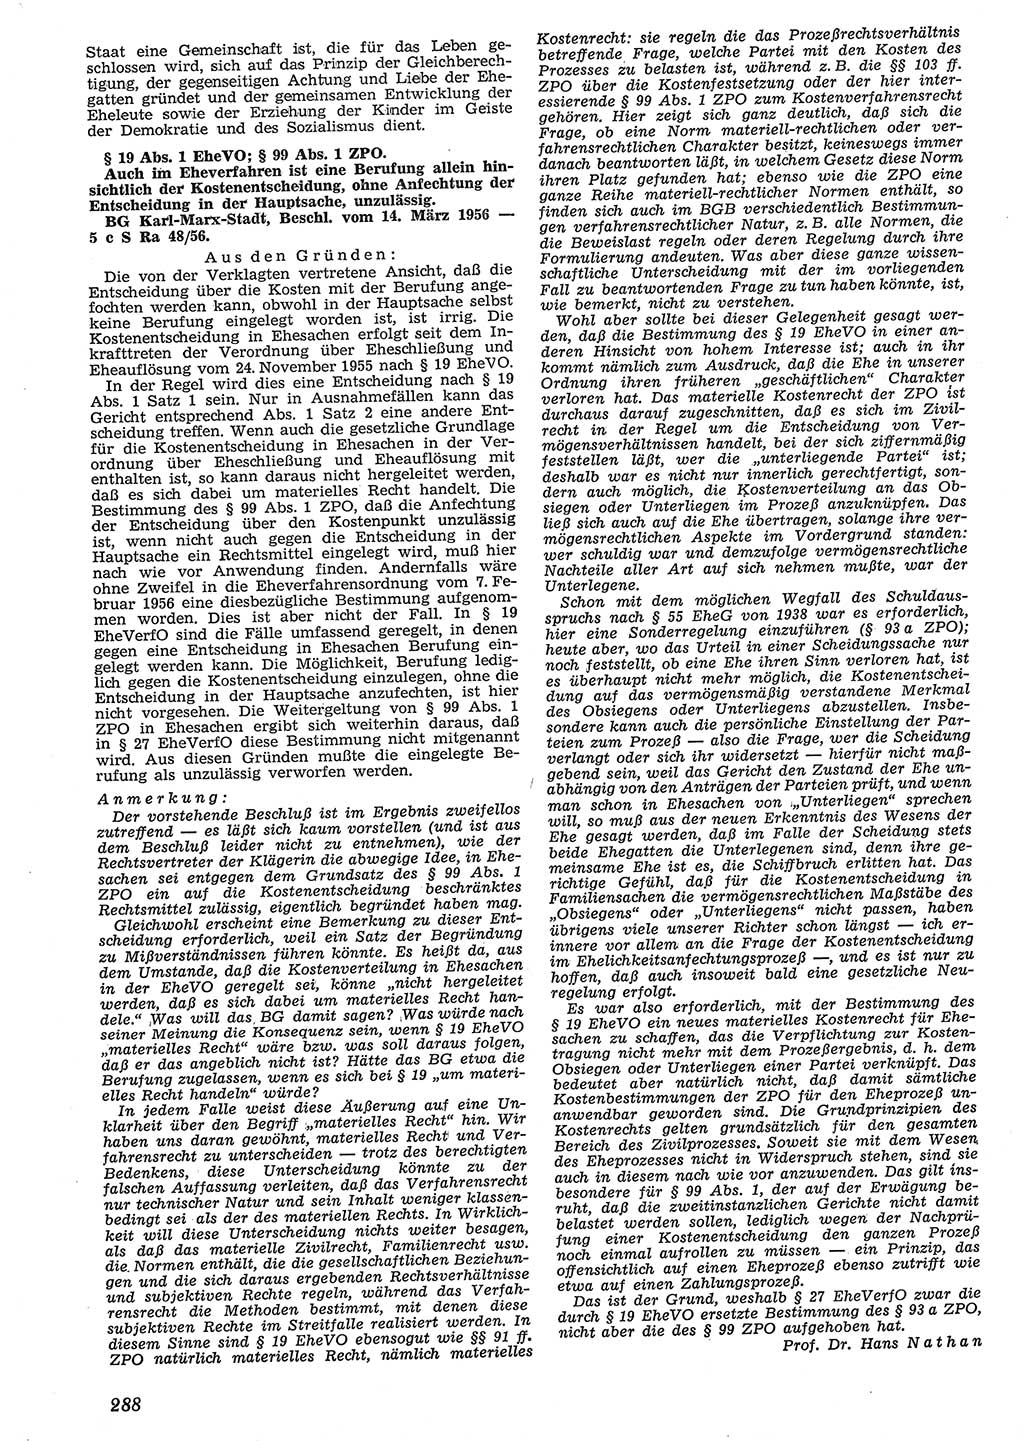 Neue Justiz (NJ), Zeitschrift für Recht und Rechtswissenschaft [Deutsche Demokratische Republik (DDR)], 10. Jahrgang 1956, Seite 288 (NJ DDR 1956, S. 288)